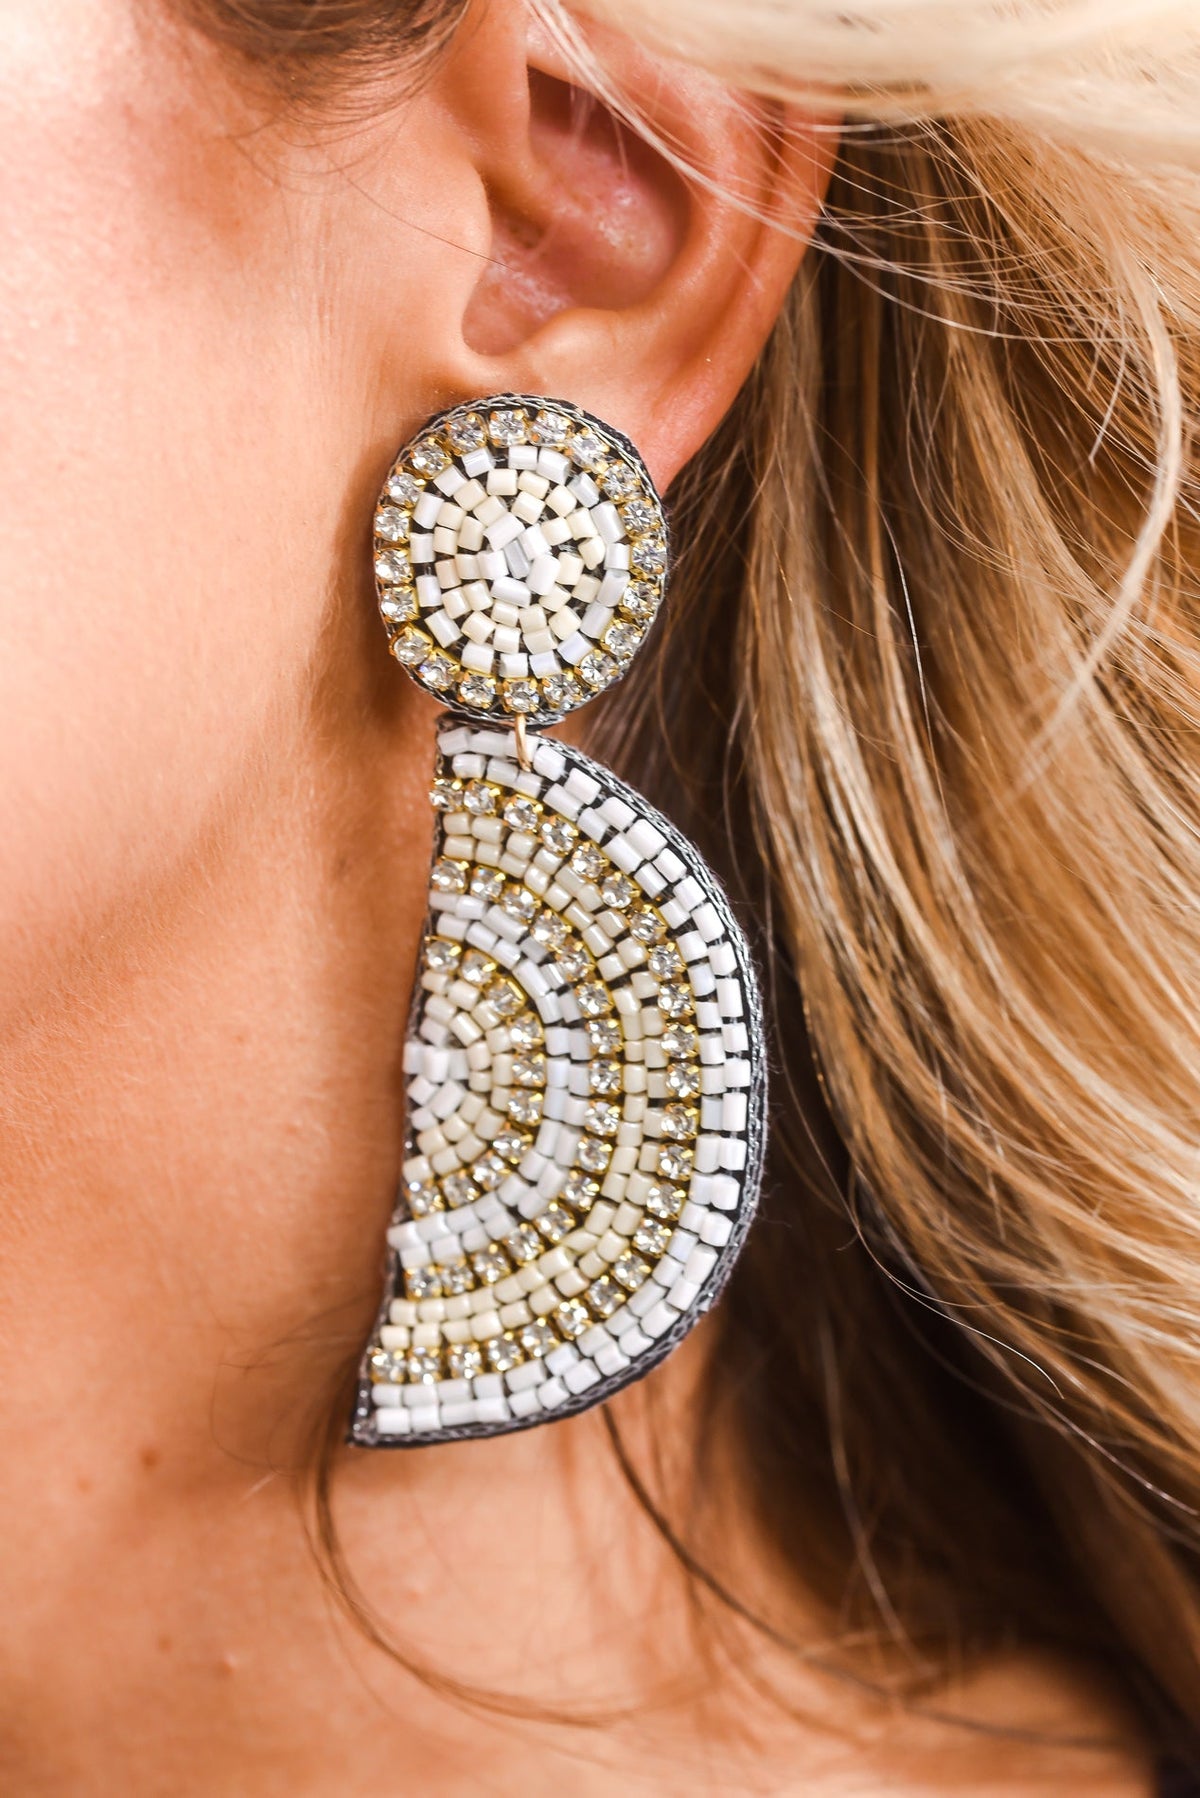 Earring Findings – Kara's Beads